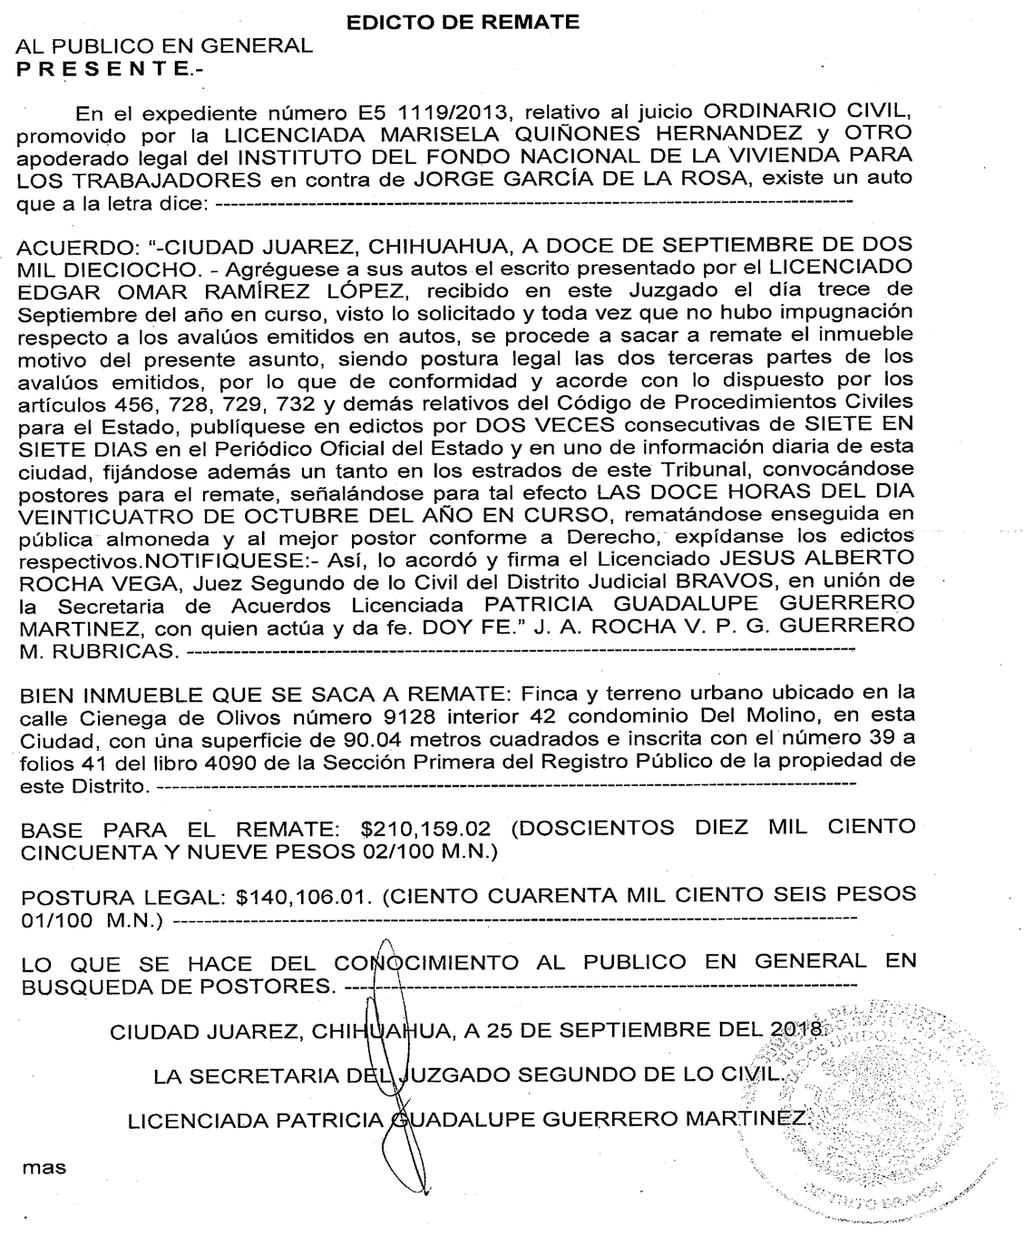 QUEZADA 1541-82-84 JORGE GARCIA DE LA